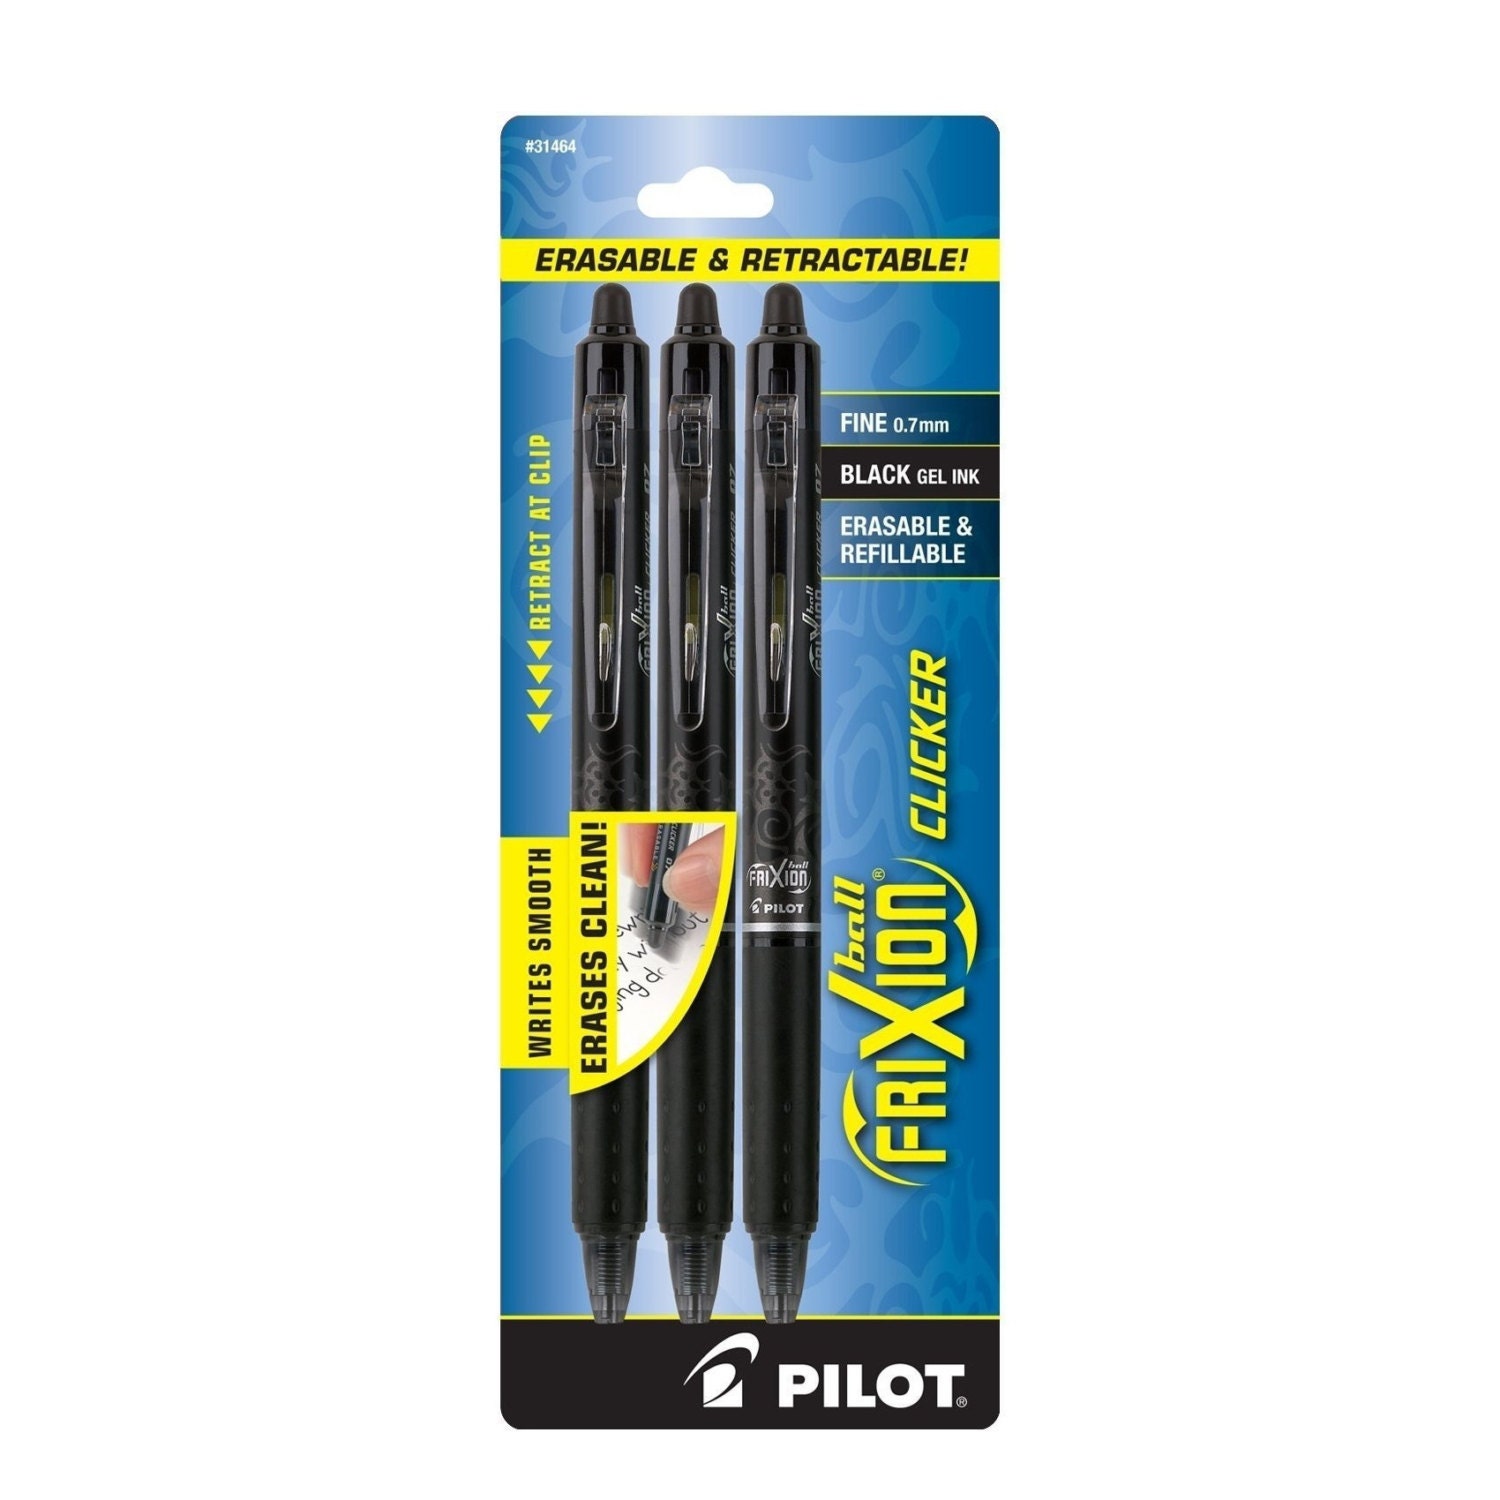 Frixion Clicker Fine Point Pen - Green – Calico Hutch